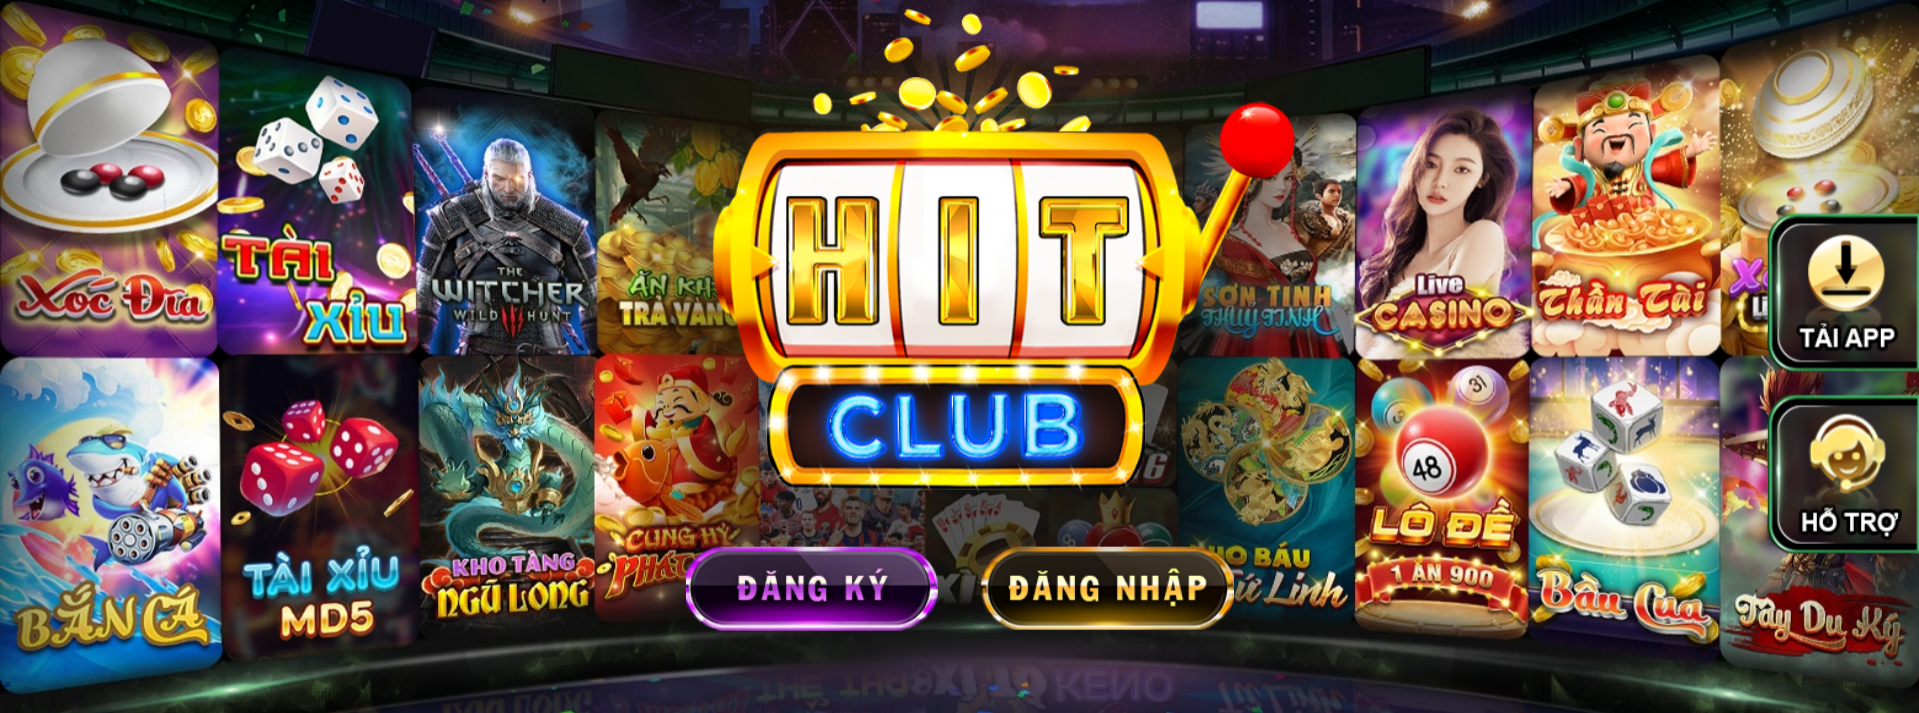 HIT Club – Thiên đường game đổi thưởng cho bet thủ Việt